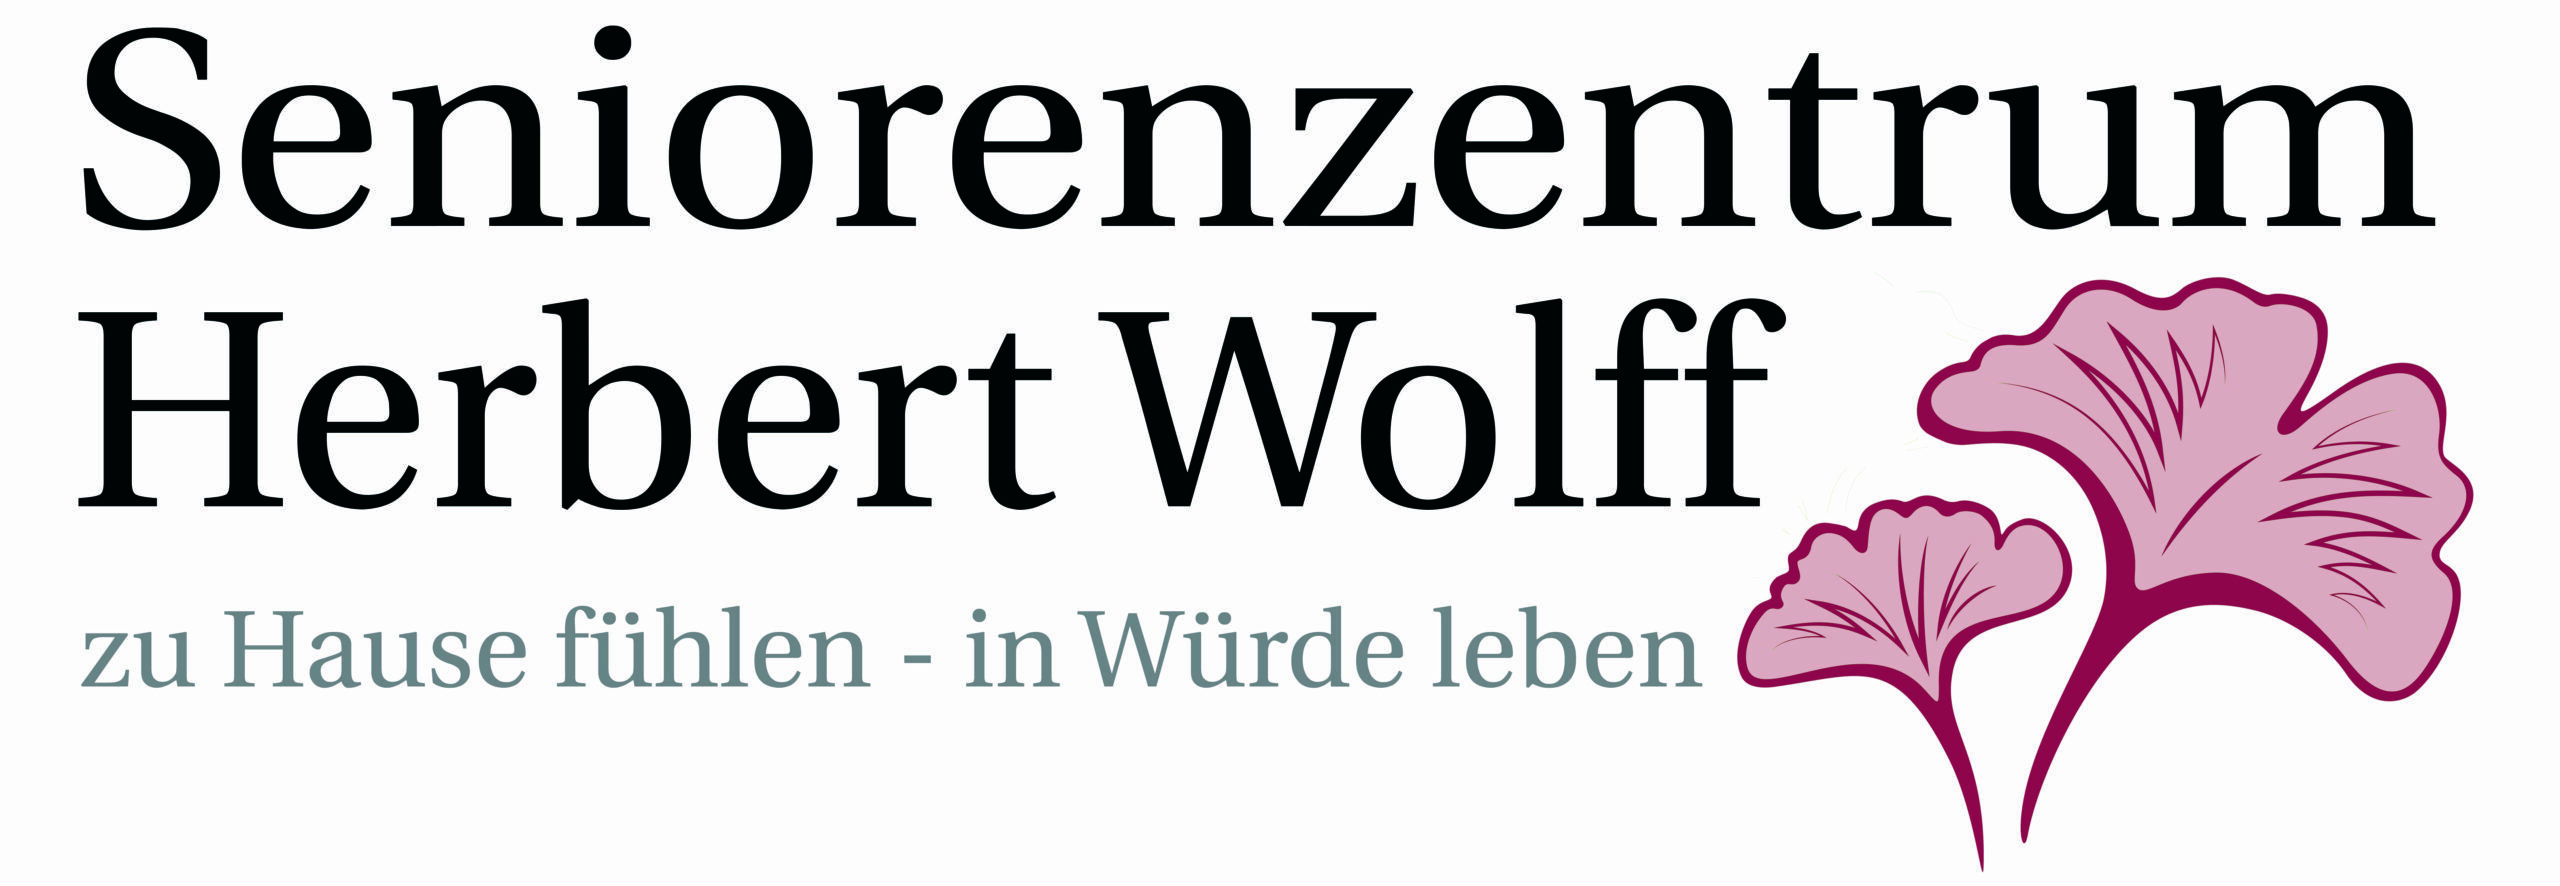 (c) Seniorenzentrum-herbert-wolff.de